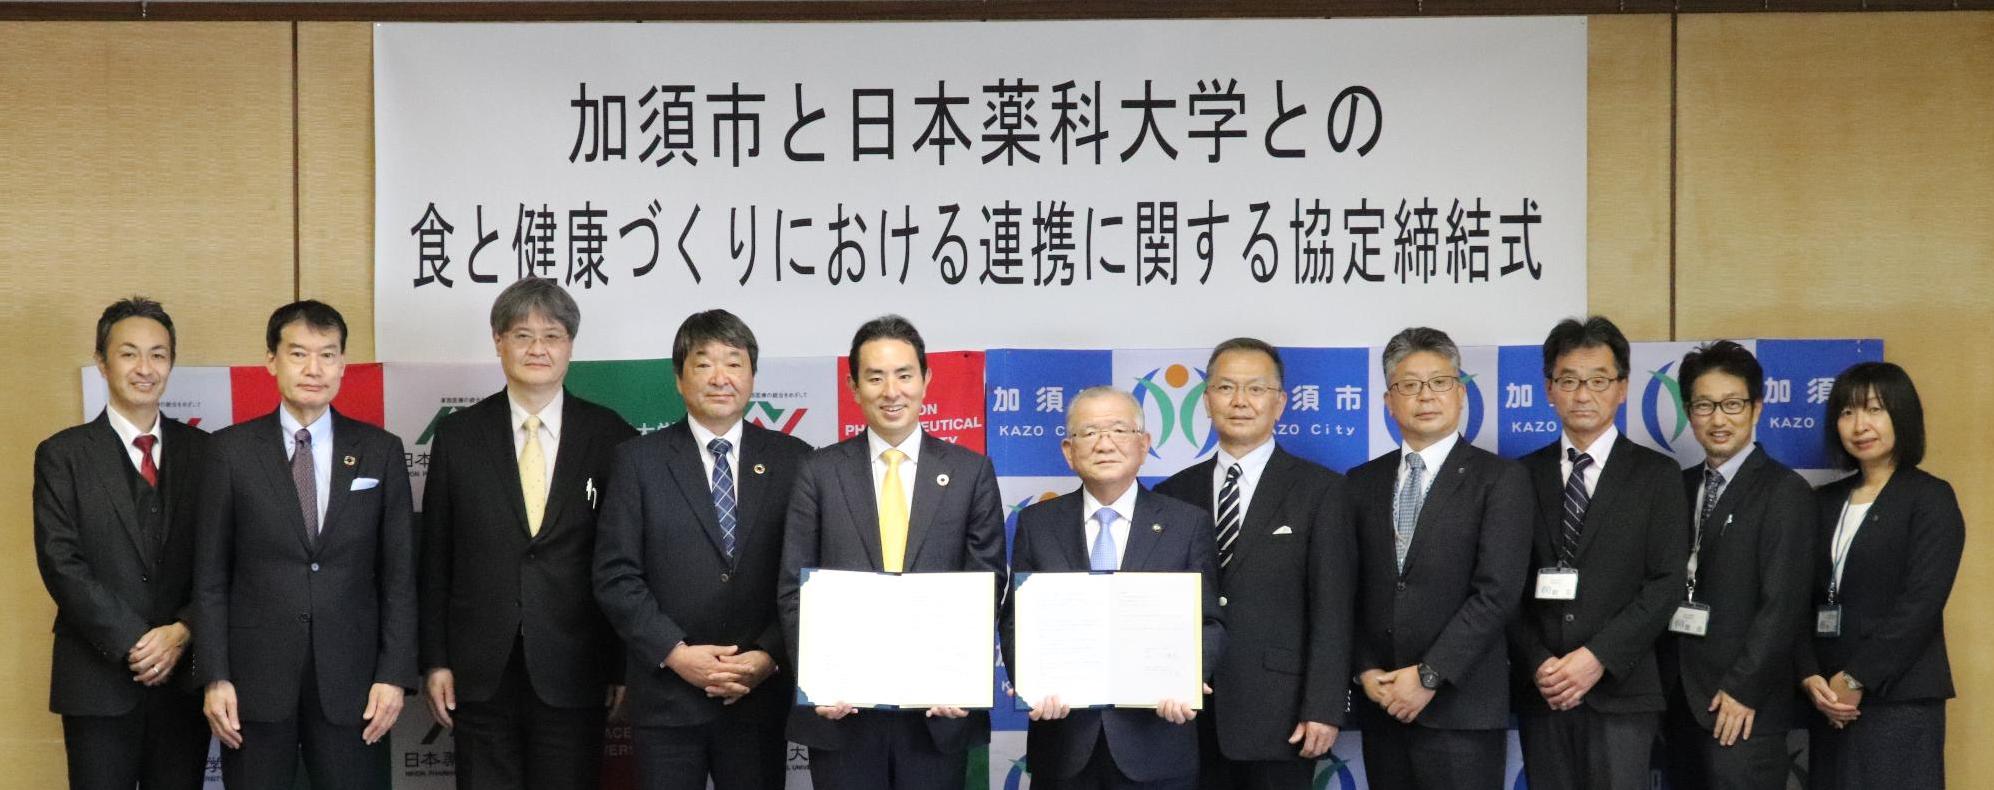 加須市と日本薬科大学との連携協定式写真